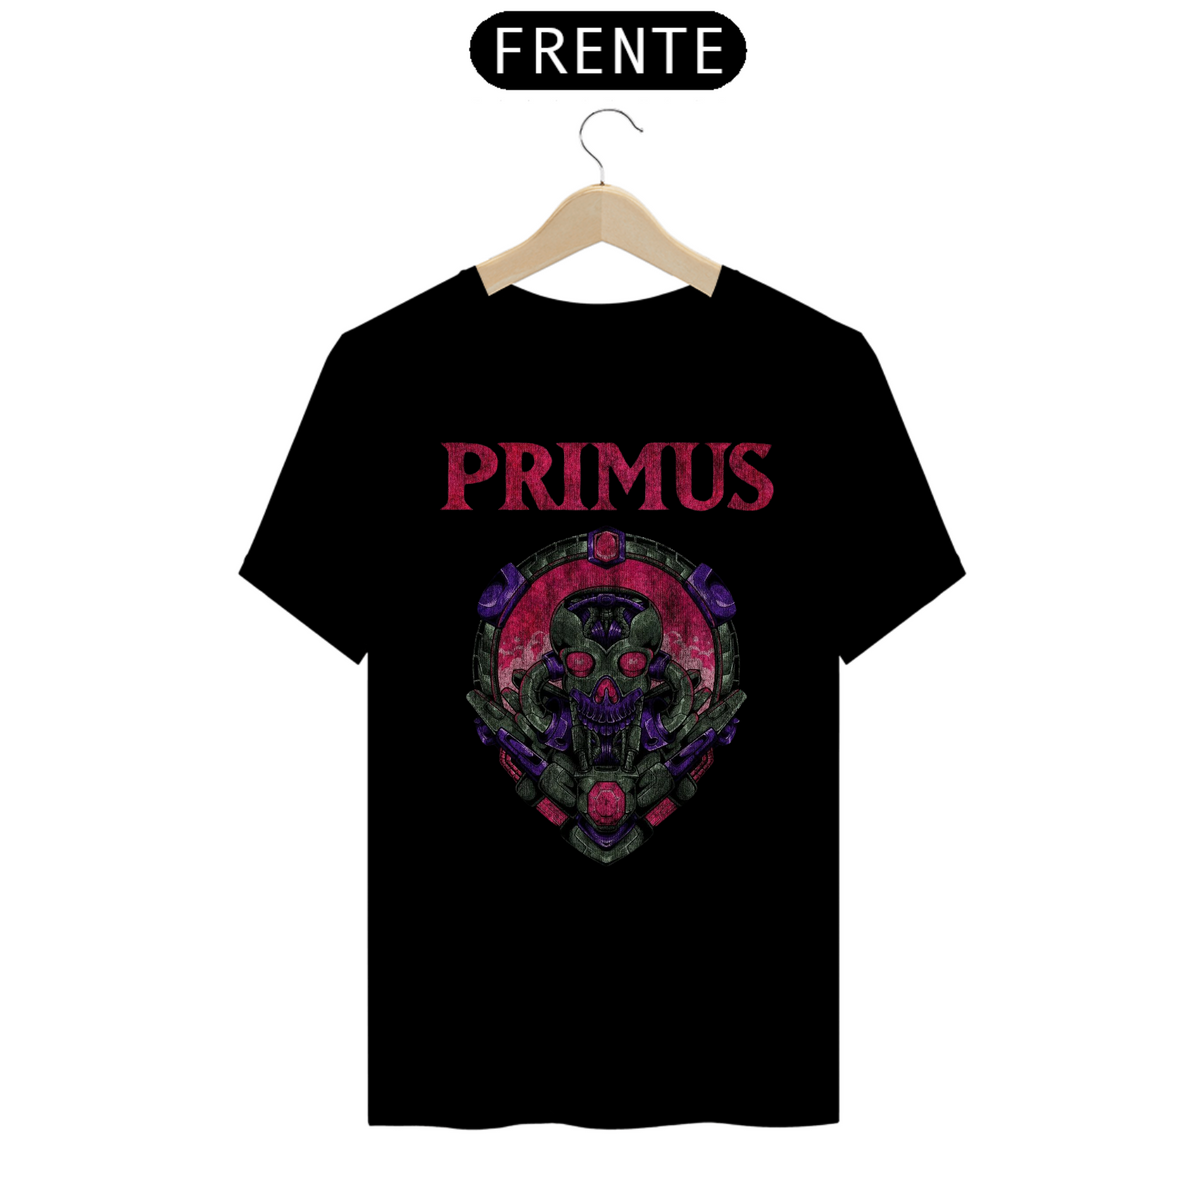 Nome do produto: Primus